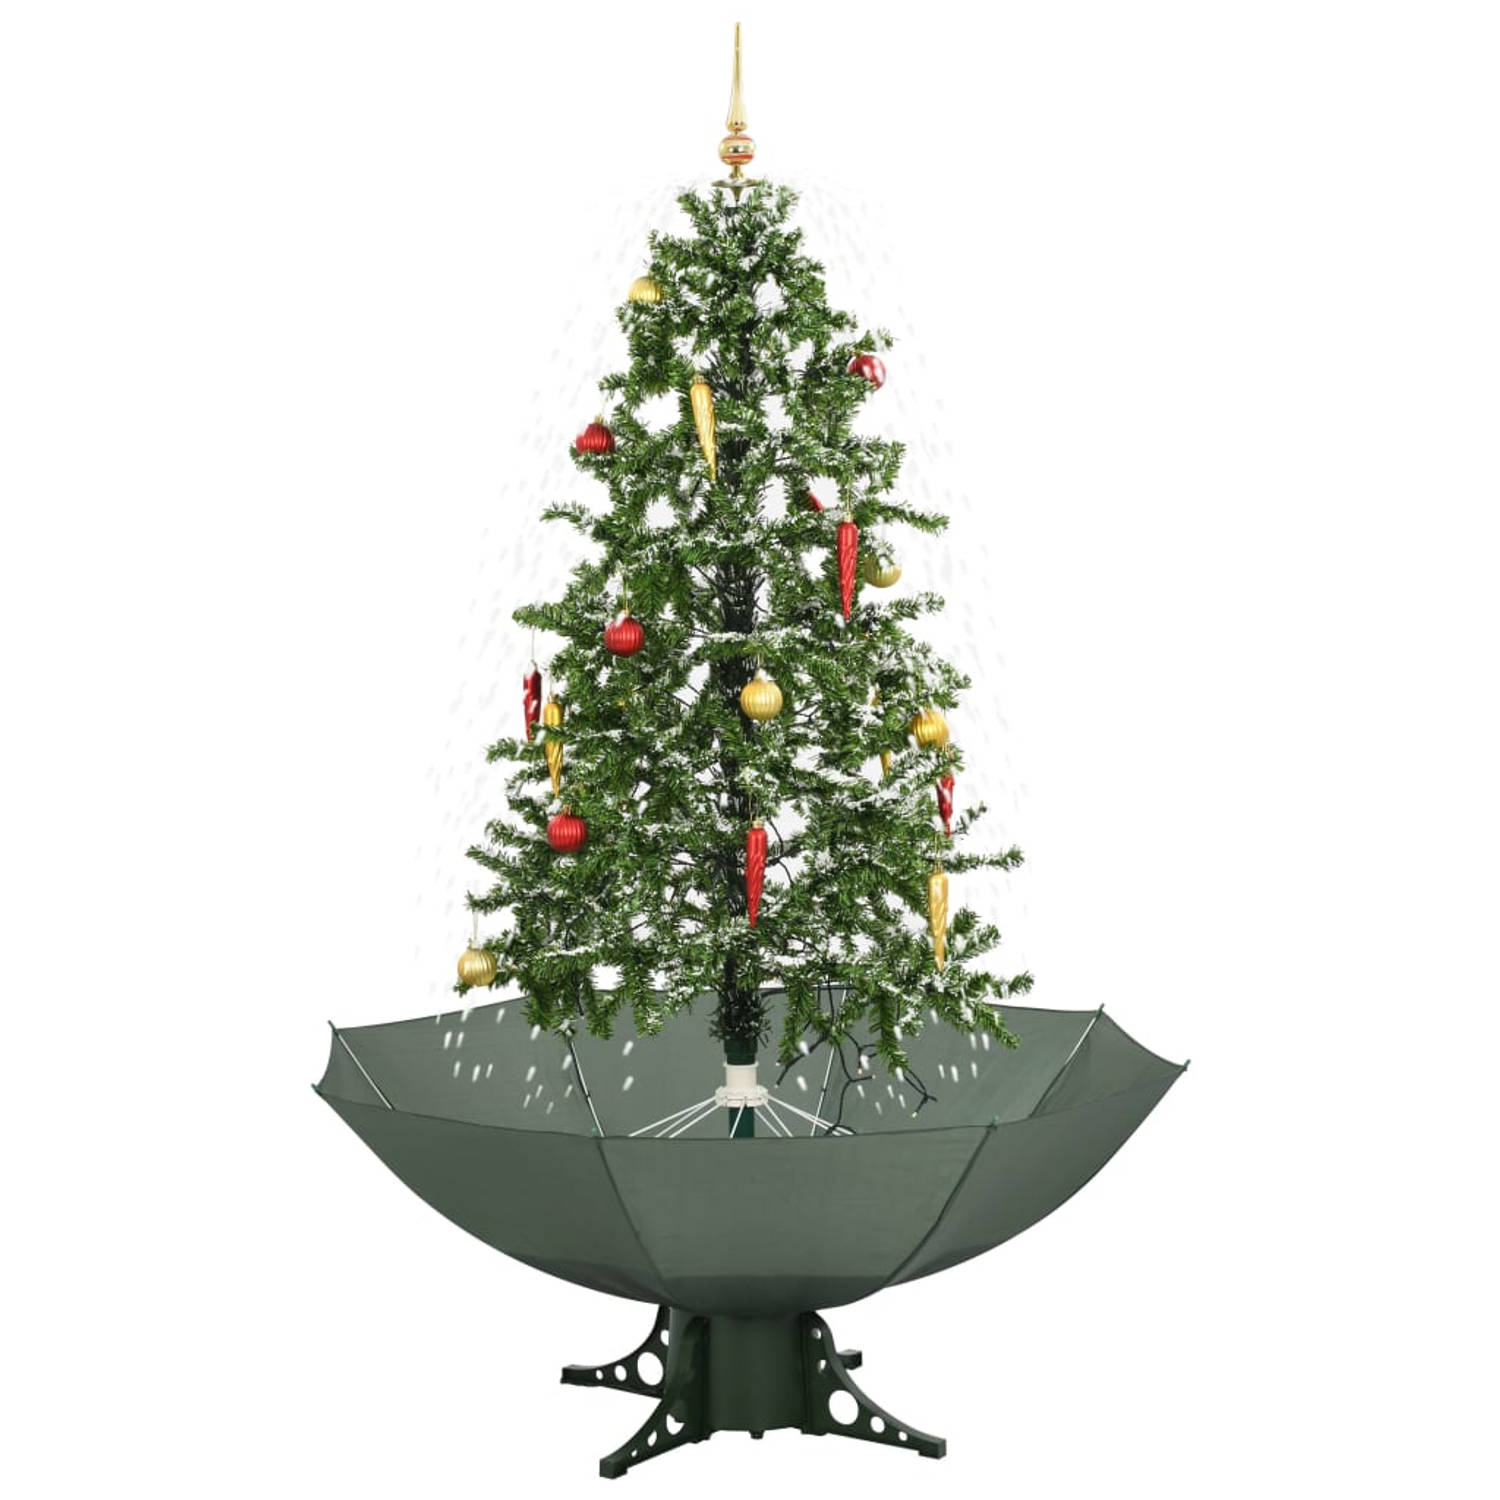 The Living Store Kerstboom sneeuwend met paraplubasis 170 cm groen - Decoratieve kerstboom